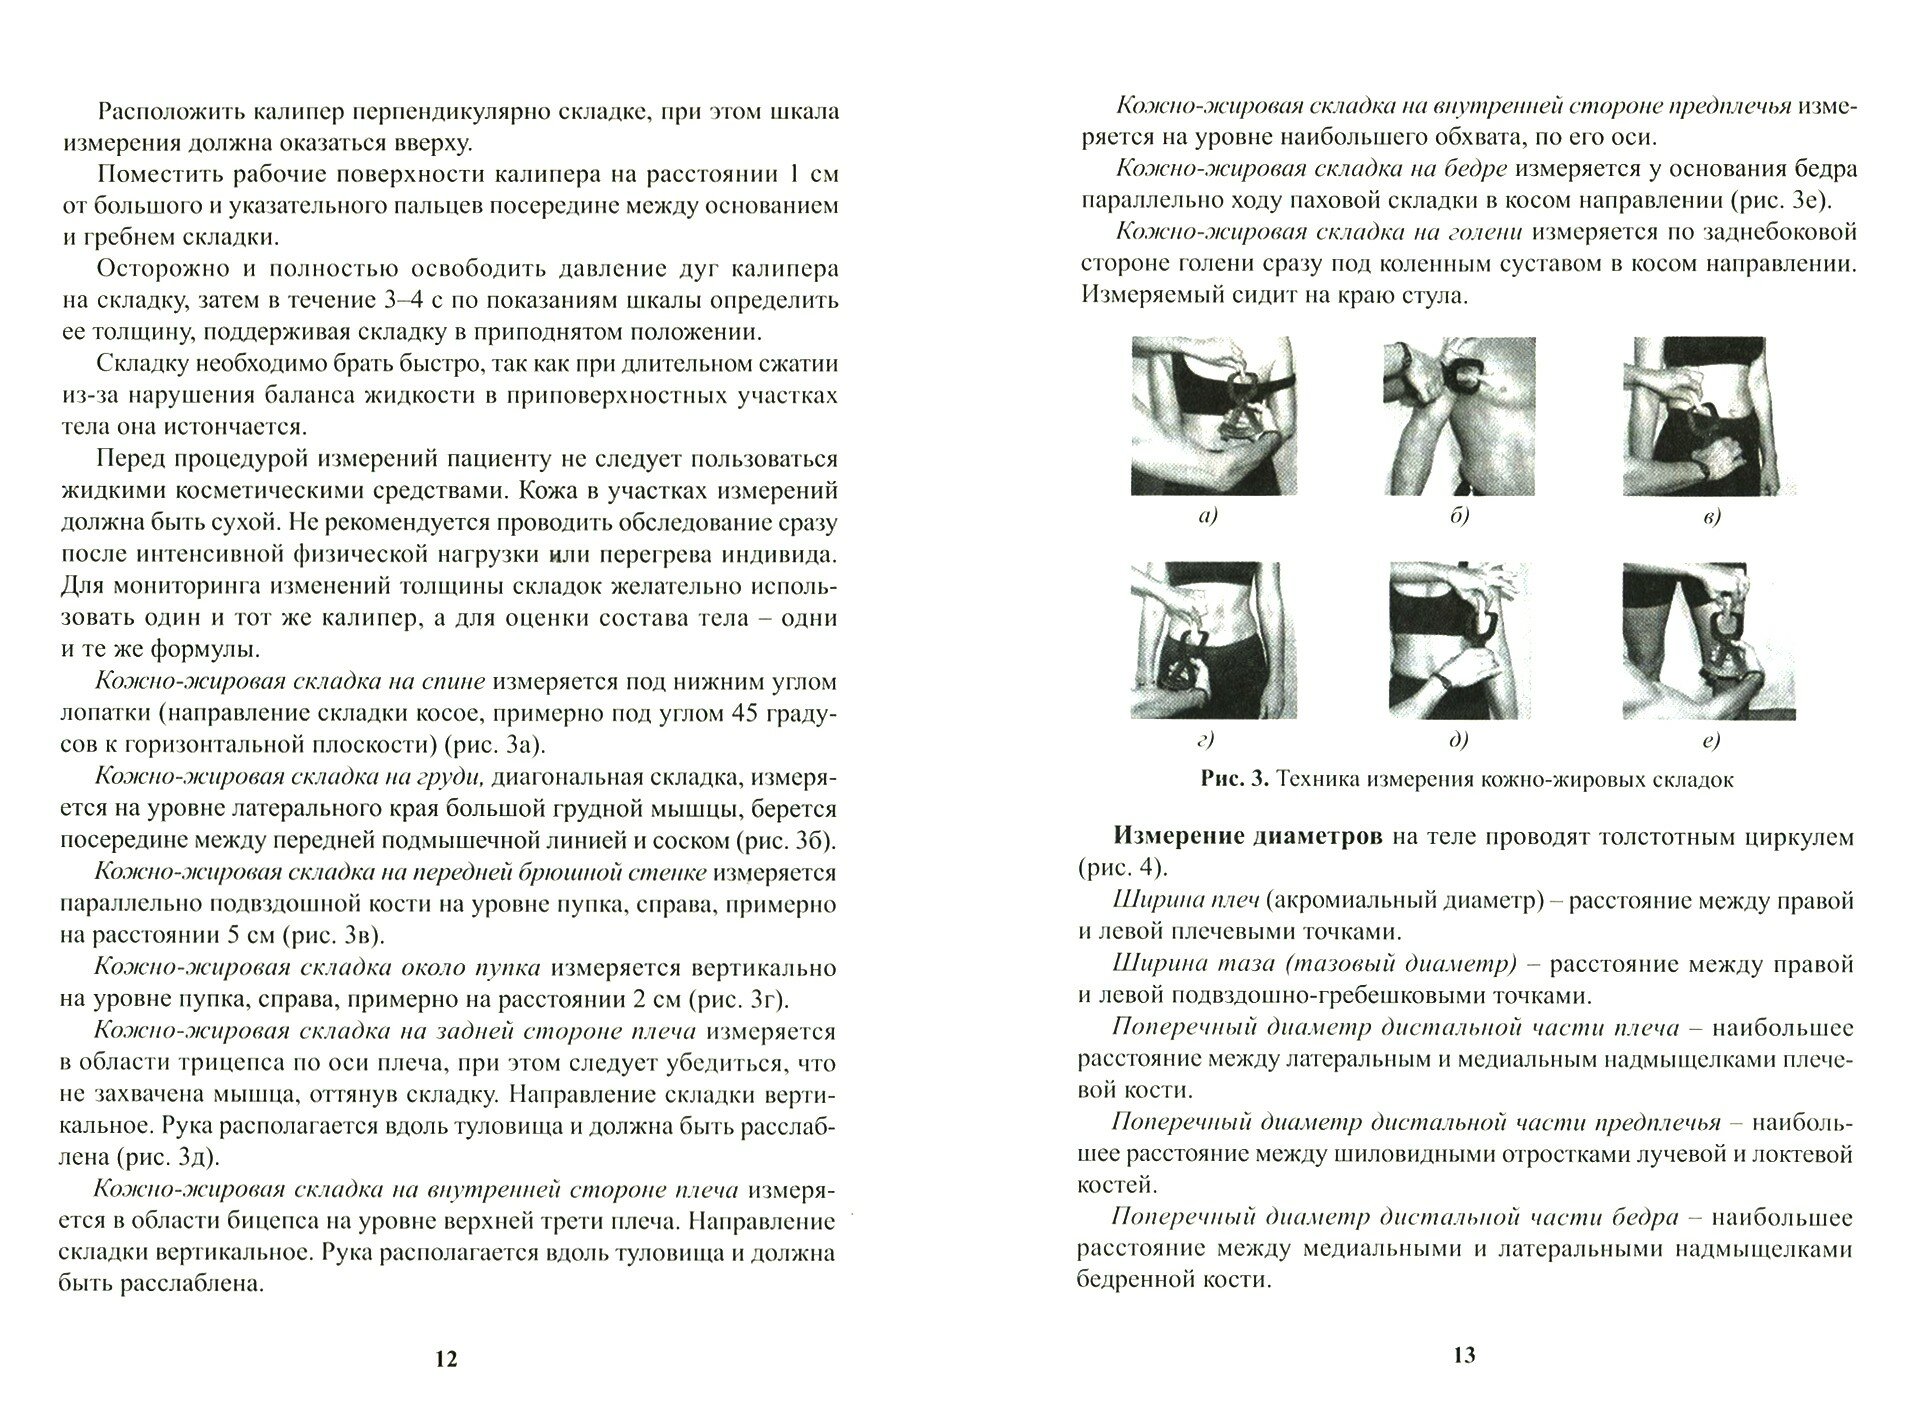 Использование метода комплексной антропометрии в спортивной и клинической практике - фото №5